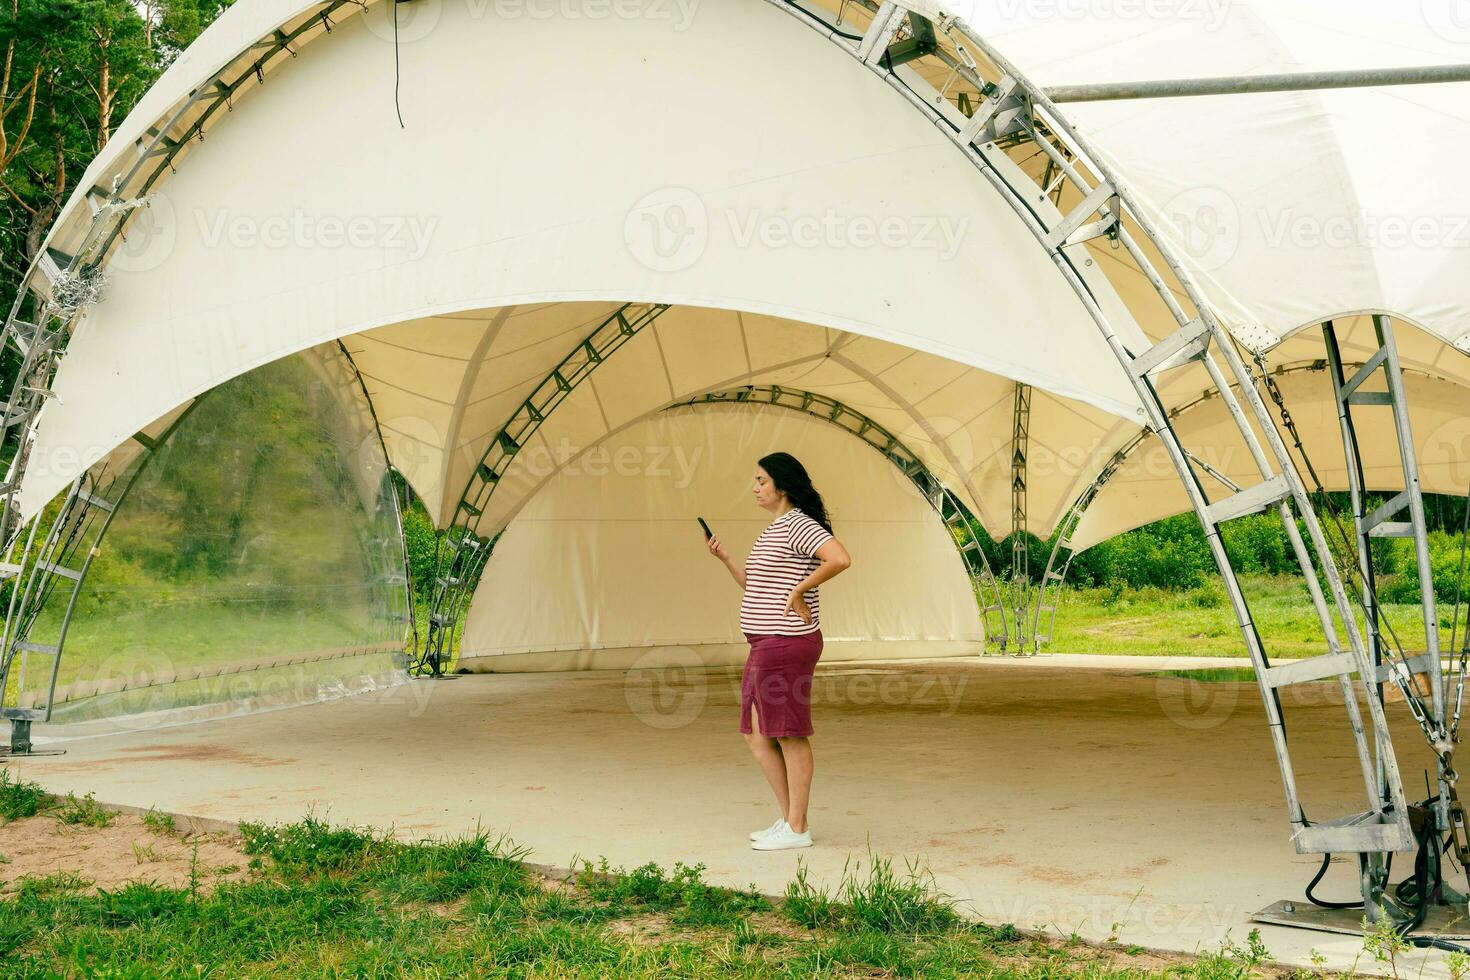 femelle organisateur les usages une téléphone intelligent tandis que permanent dans un vide tente pavillon pour rue Masse événements photo